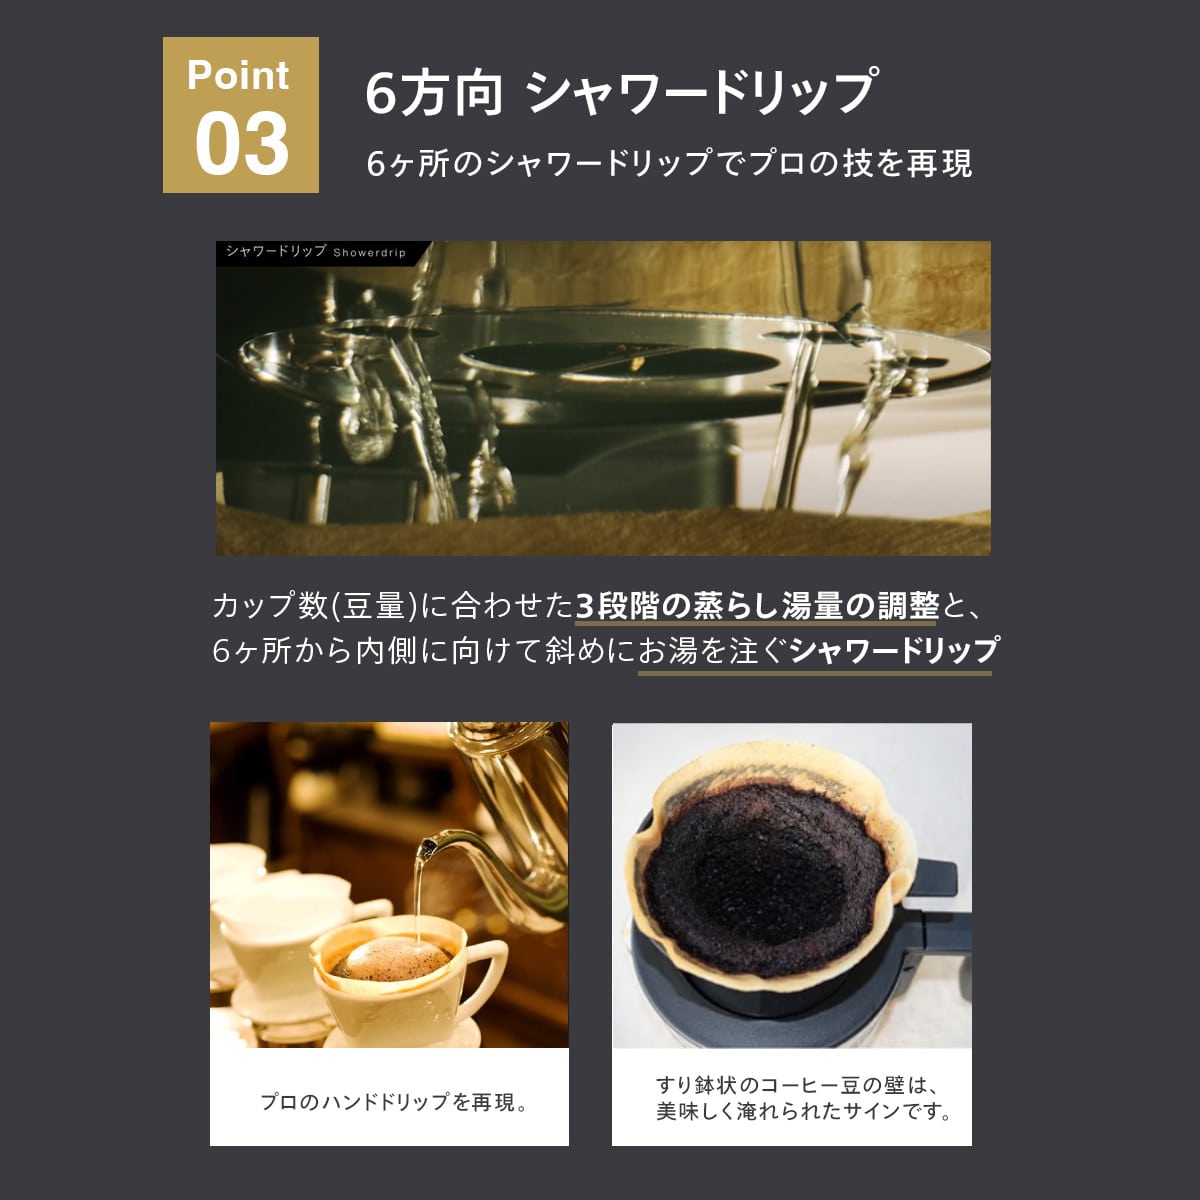 ツインバード 日本製 全自動 コーヒーメーカー 6杯用 雪室珈琲豆 3袋セット